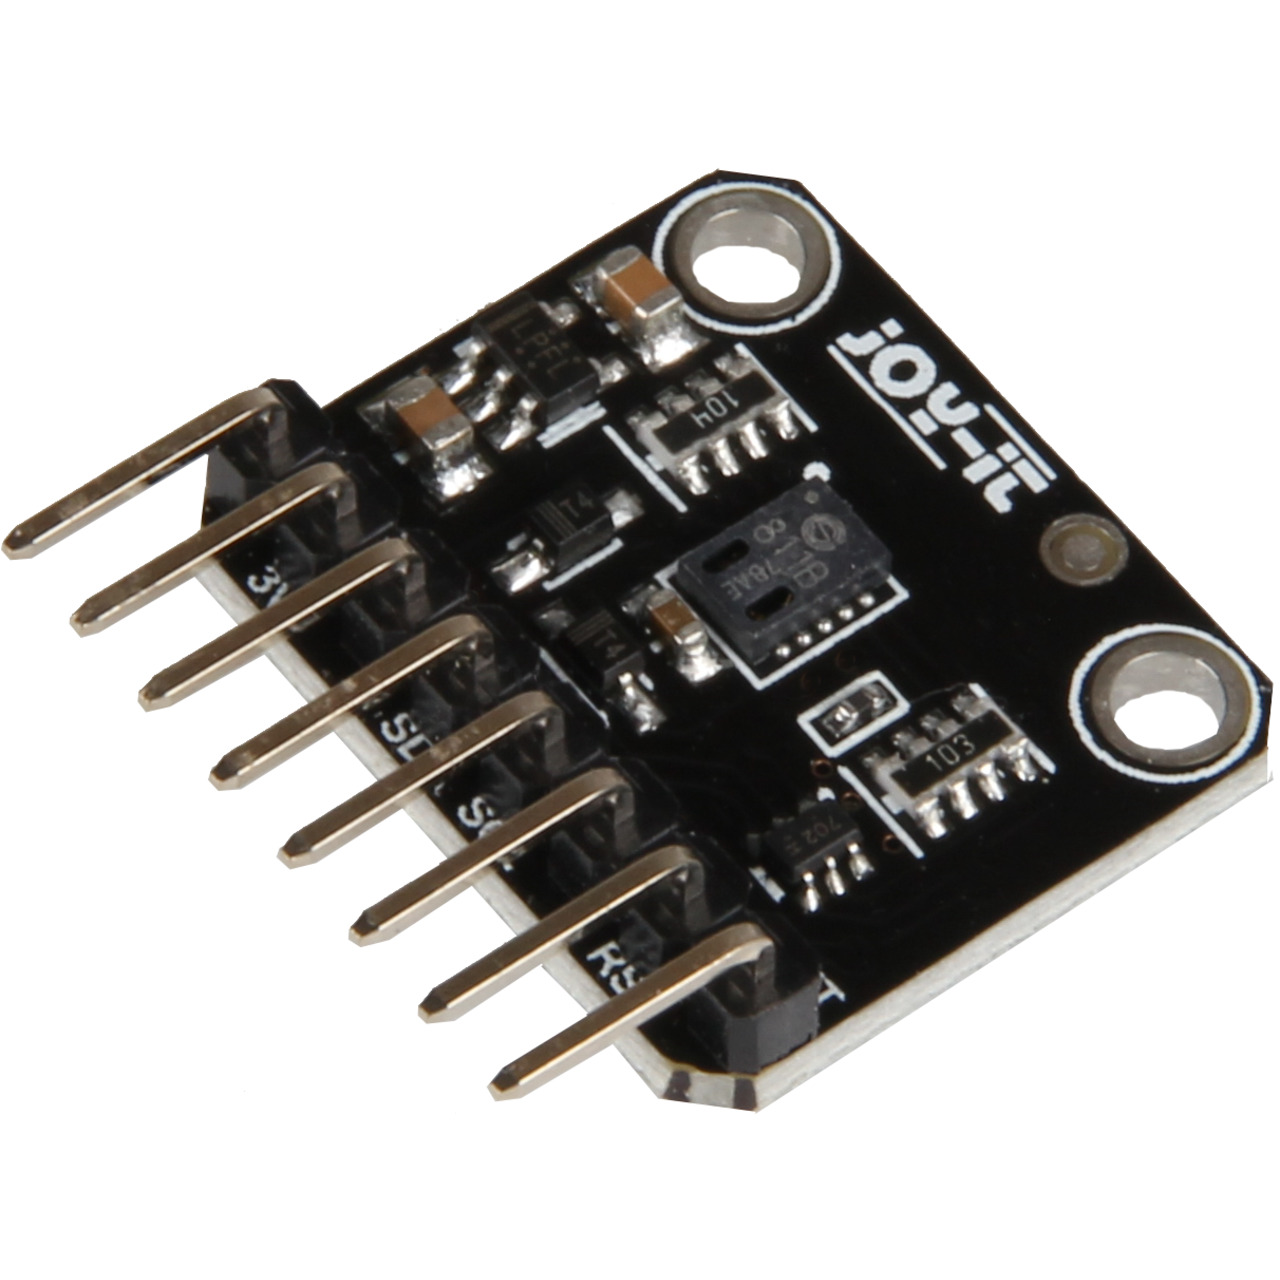 Joy-IT Luftqualitätssensor (VOC) mit angelötetenn Pins- I2C- CCS811 Sensor unter Bausätze